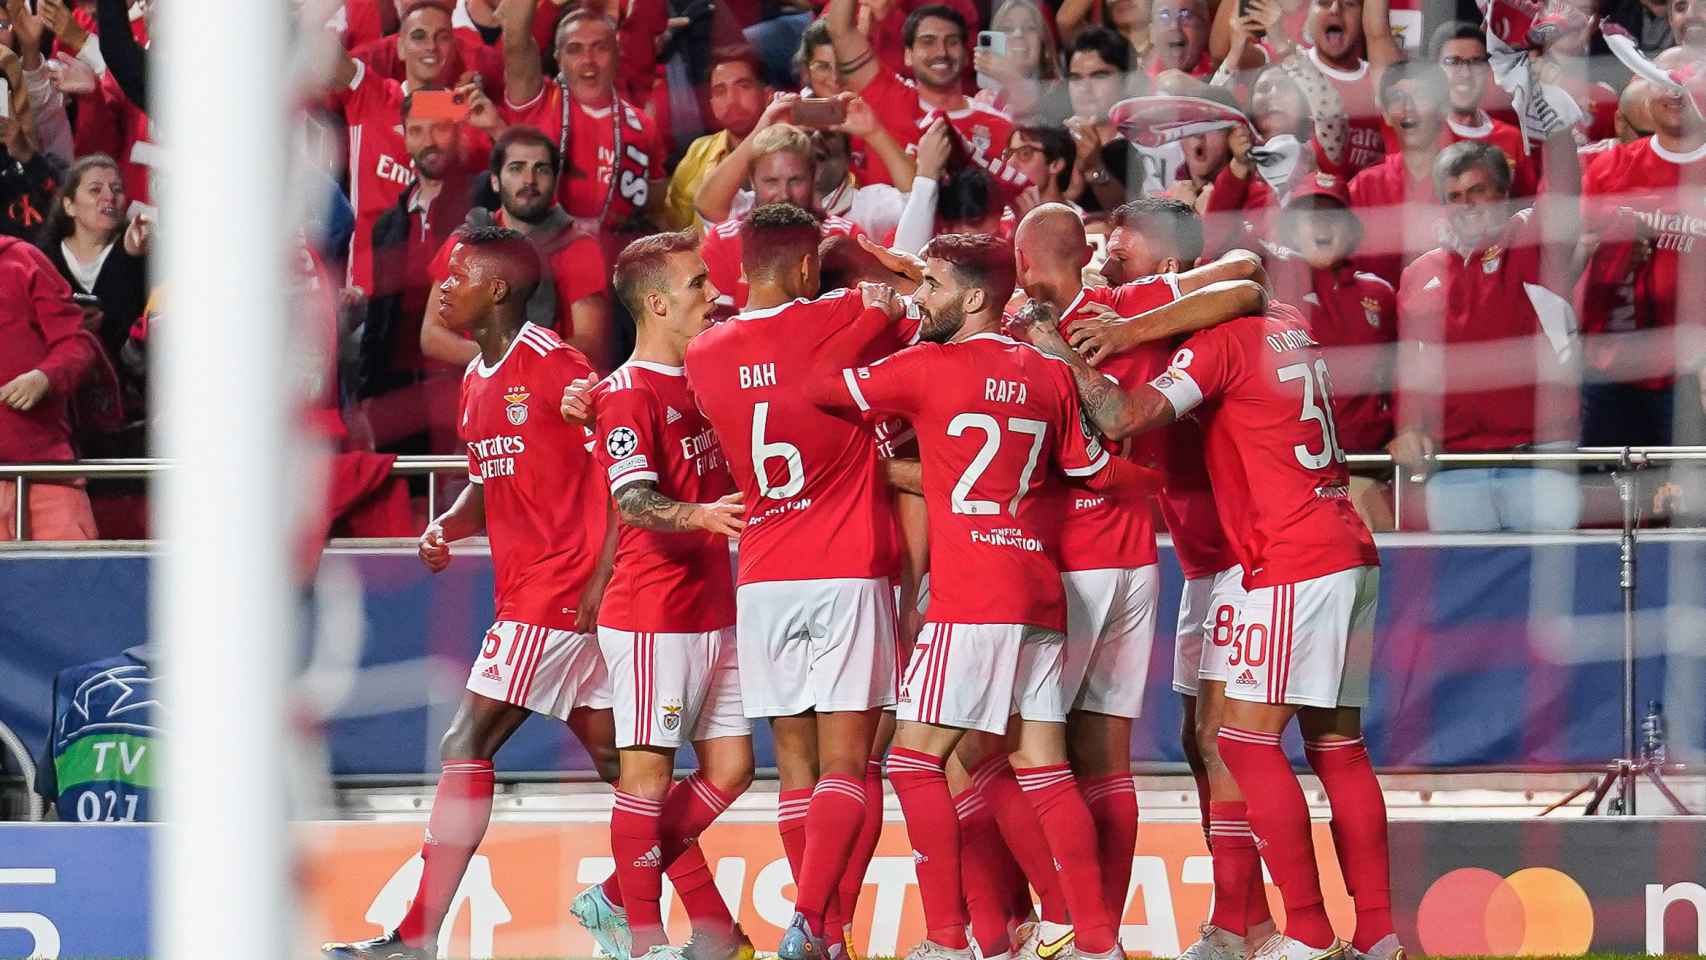 Piña de los jugadores del Benfica para celebrar un gol en la Champions League 2022/2023